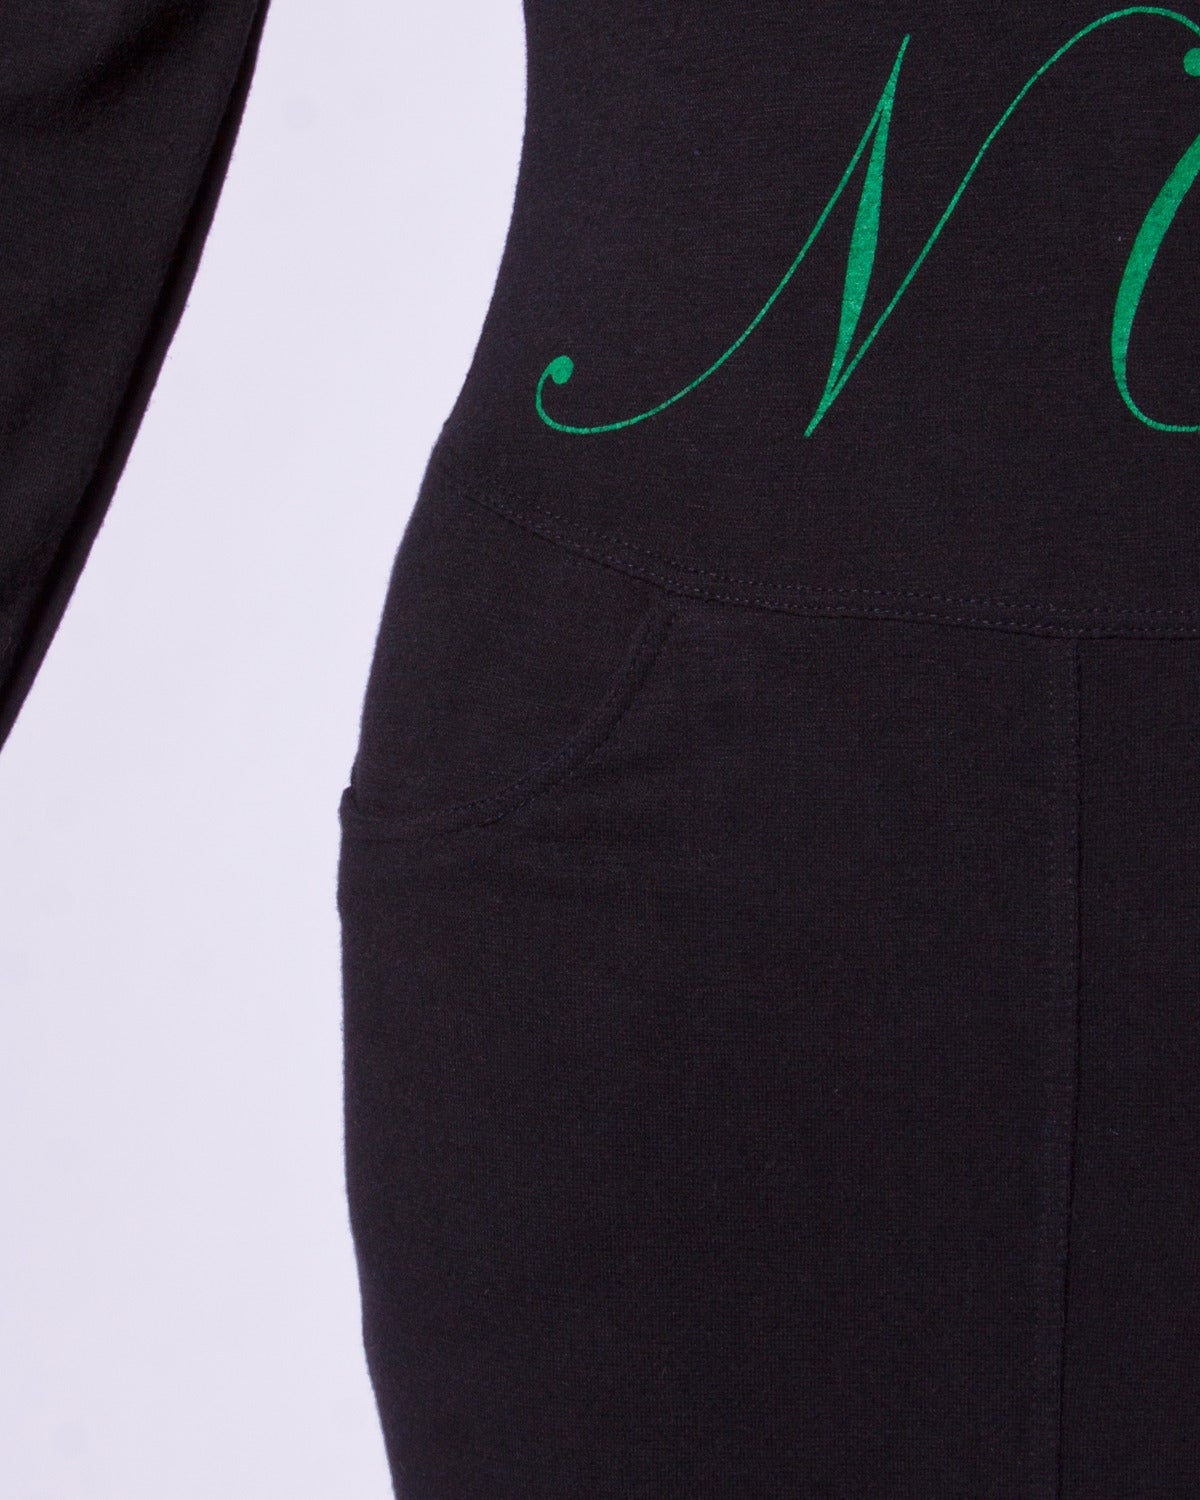 Moschino Jeans - Robe à manches longues vintage avec imprimé graphique « M.O.S. CHI? NO! » NO! » Robe à manches longues en vente 2